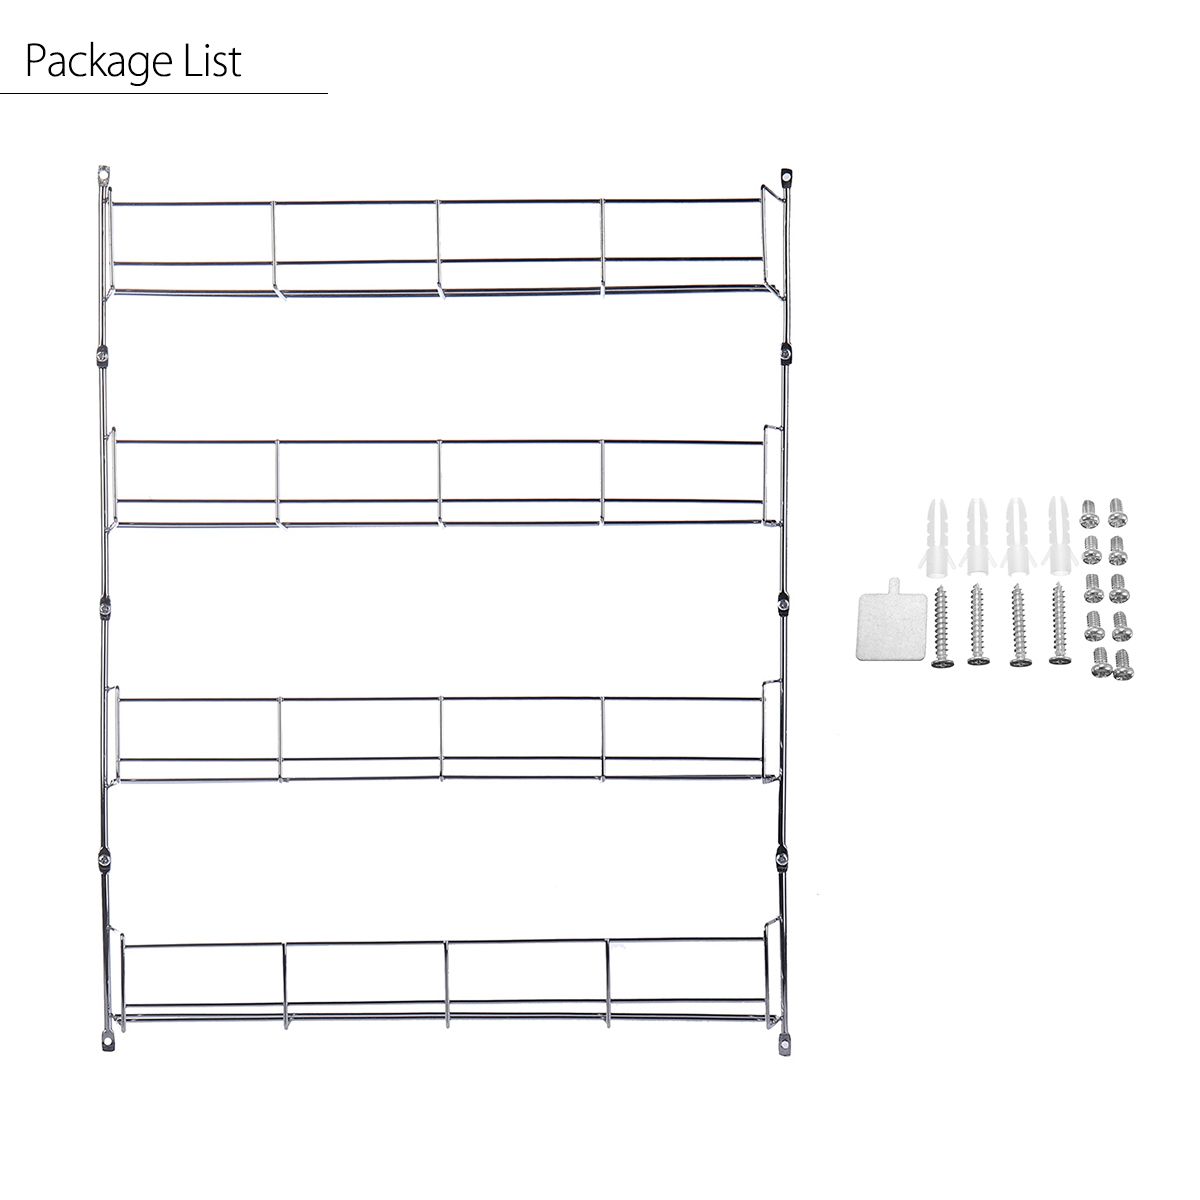 4-Tiers-Kitchen-Spice-Jar-Rack-Cabinet-Organizer-Wall-Mount-Storage-Shelf-Bracket-Holder-1341906